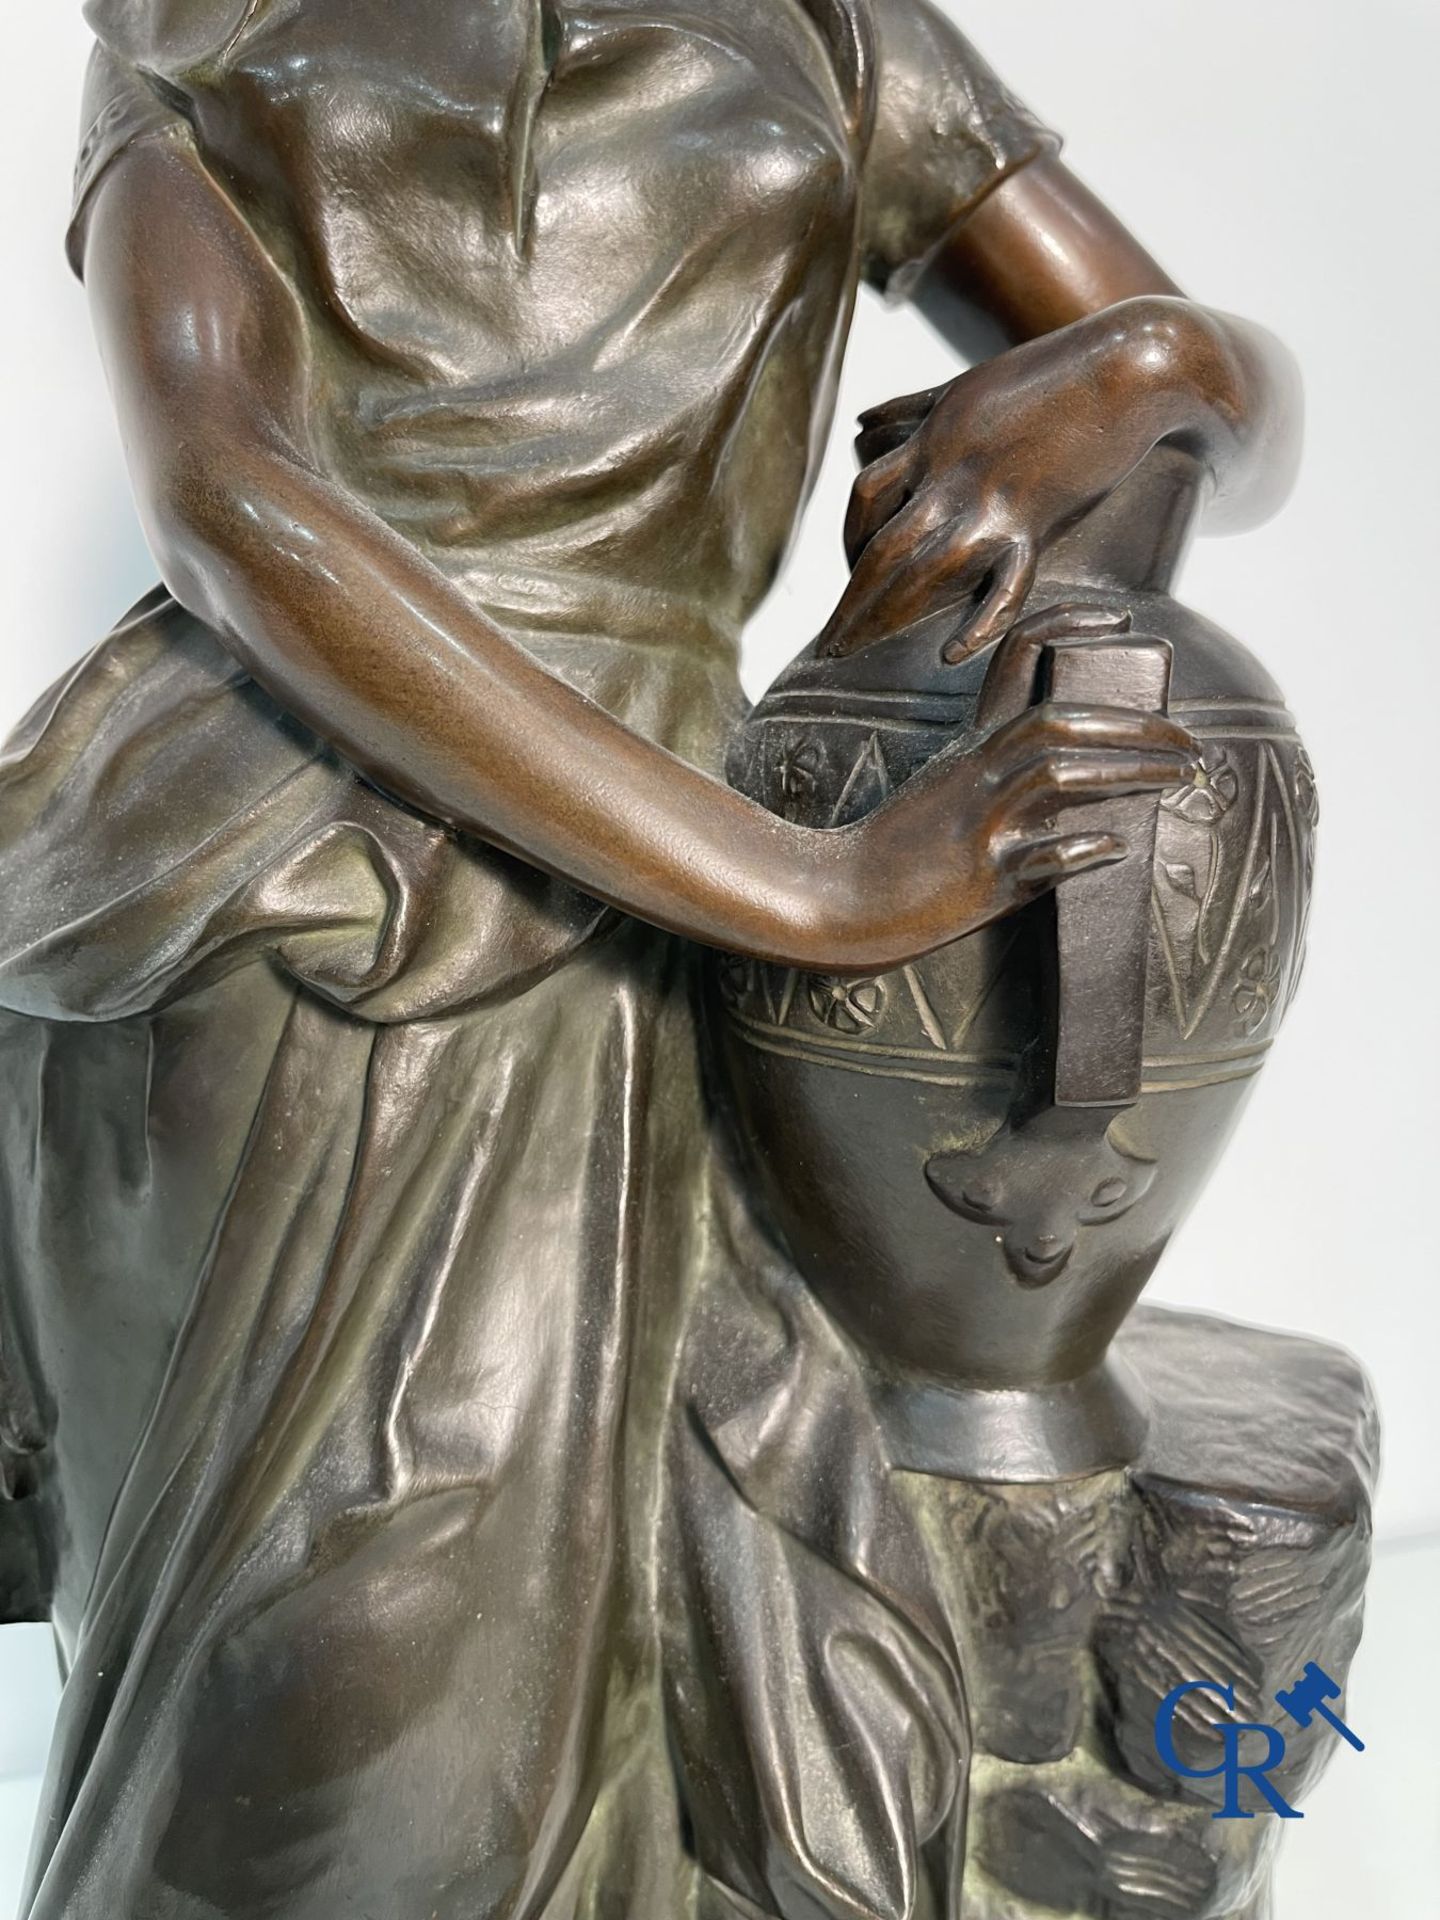 Edmond Lefever: (Ypres 1839-Schaarbeek 1911) "Rebecca" oriental bronze statue. - Image 8 of 16